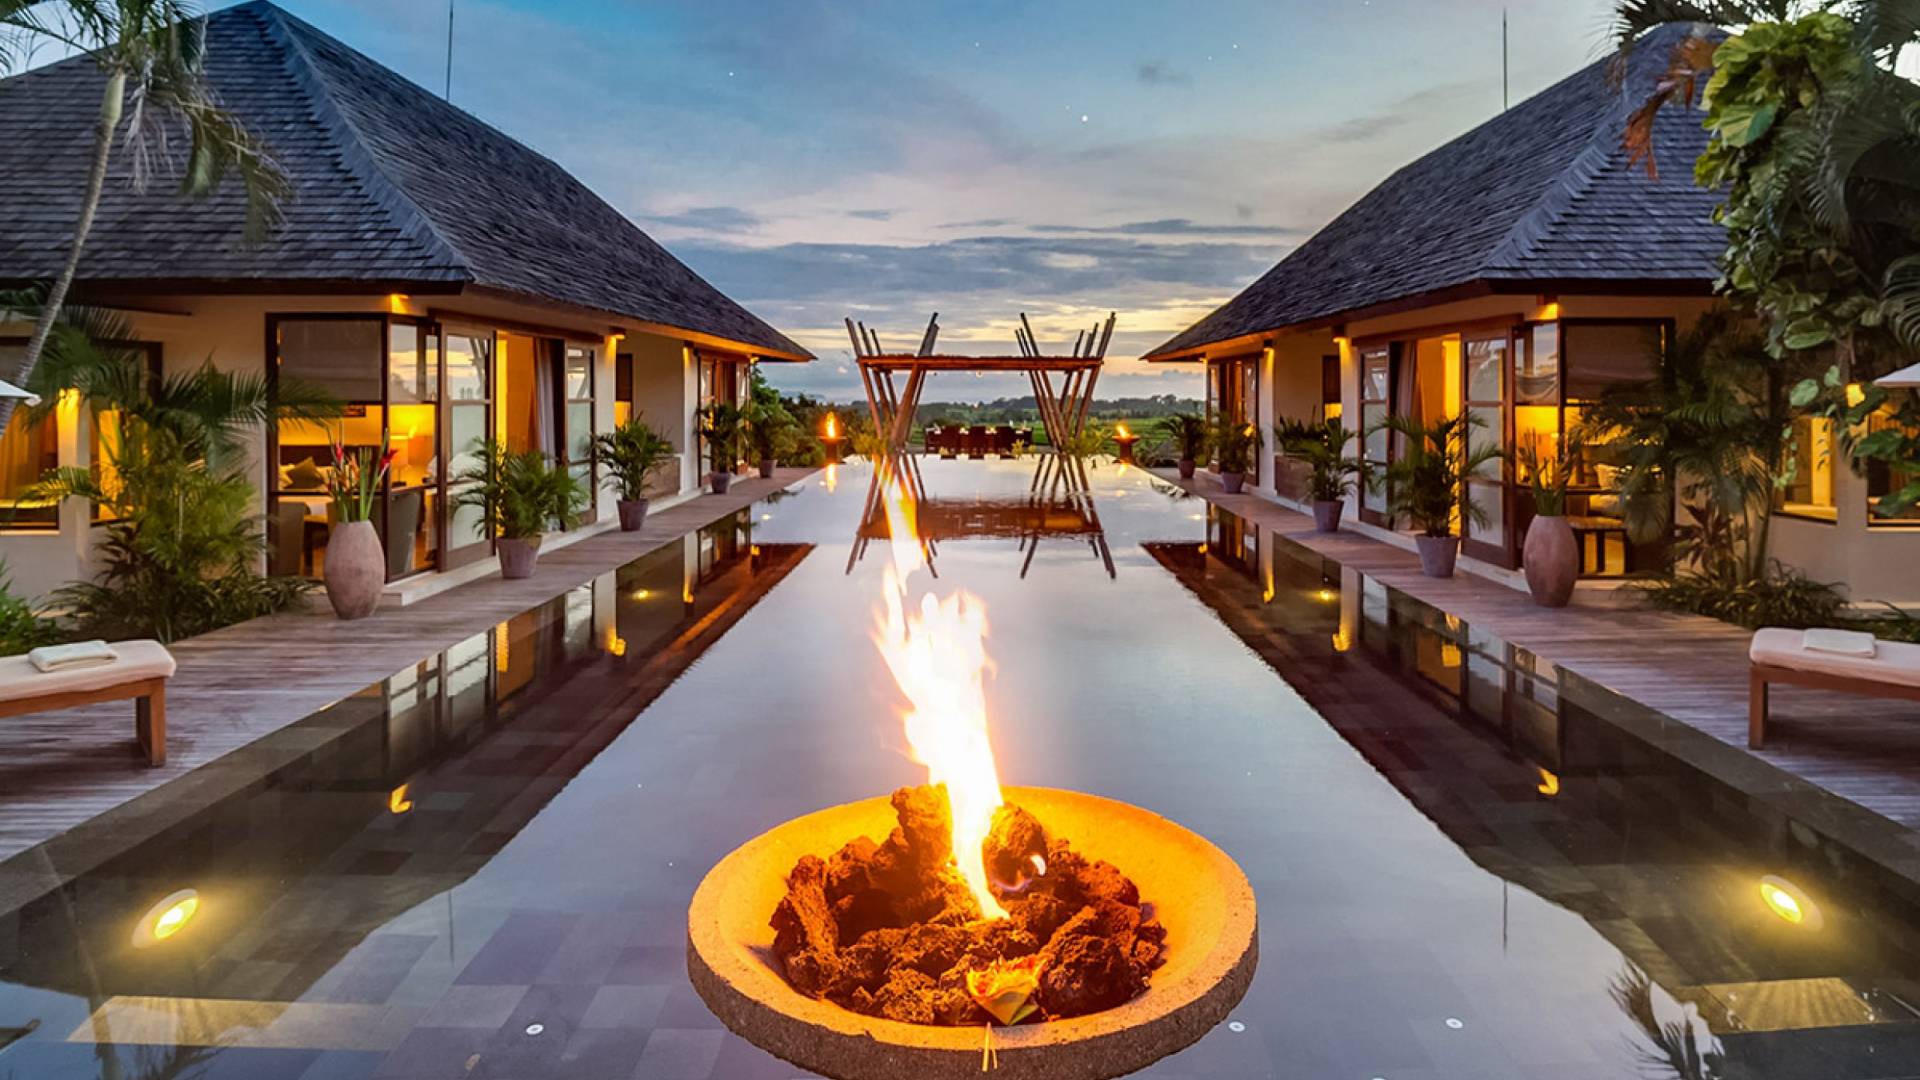 Villa Mandalay Bali | By UniqueVillas